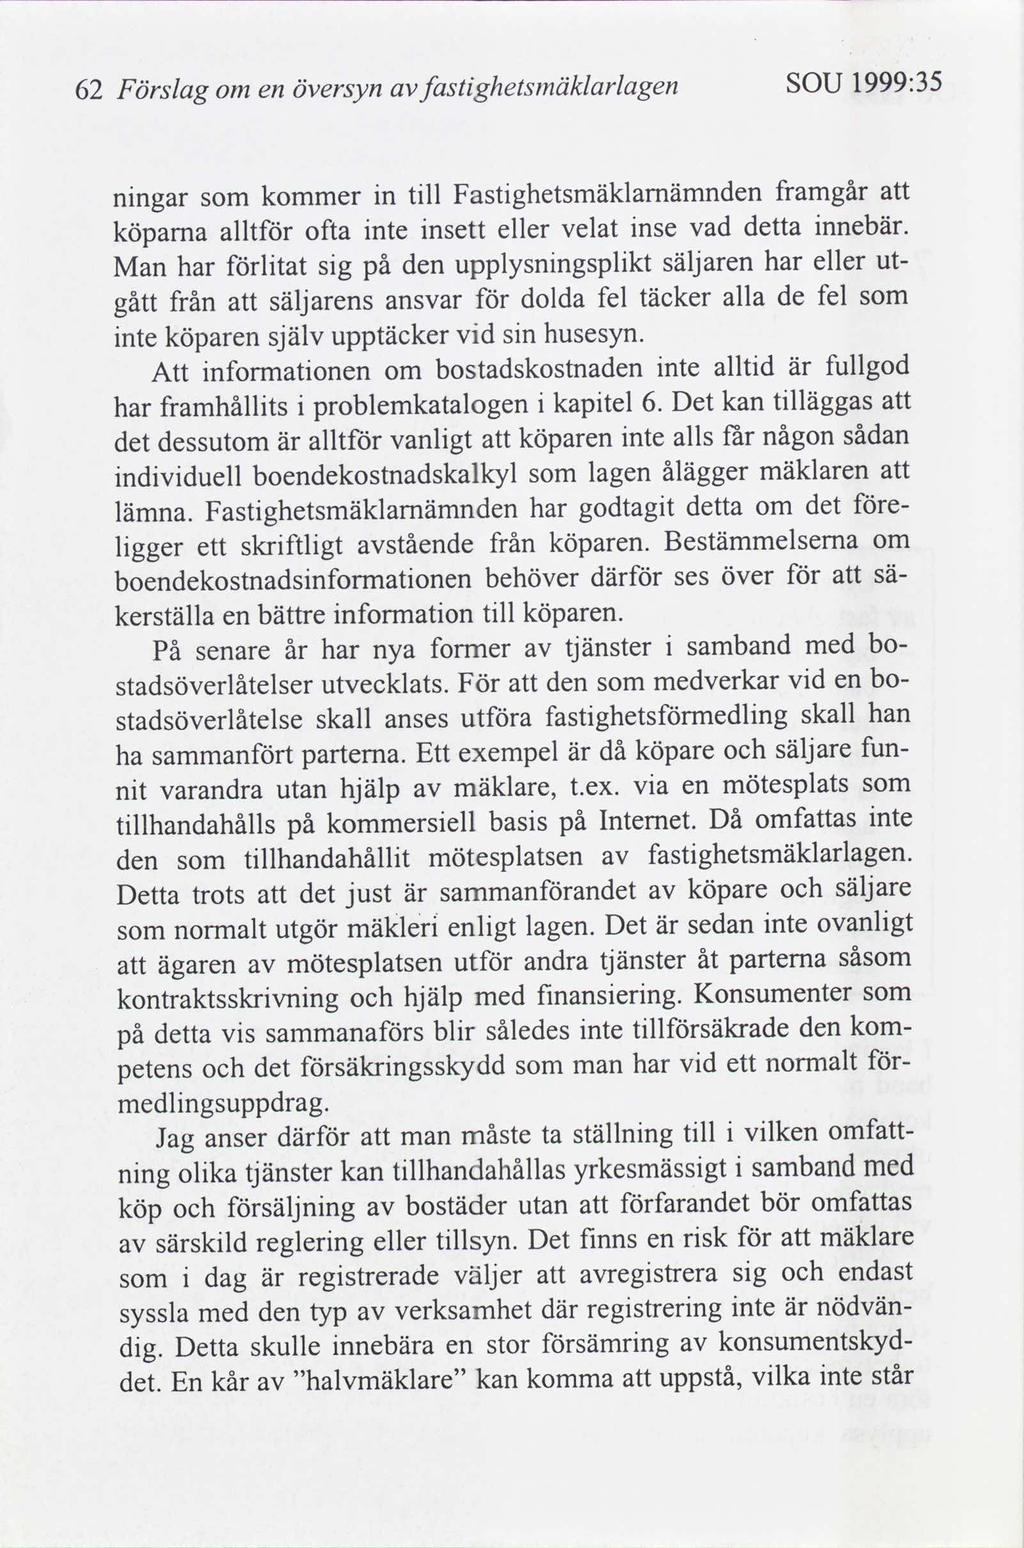 1999:35 SOU ghetsmäklarlagen fast Förslag 62 Översyn en om framgår Fastghetsmäklamämnden tll n kommer nngar nnebär.